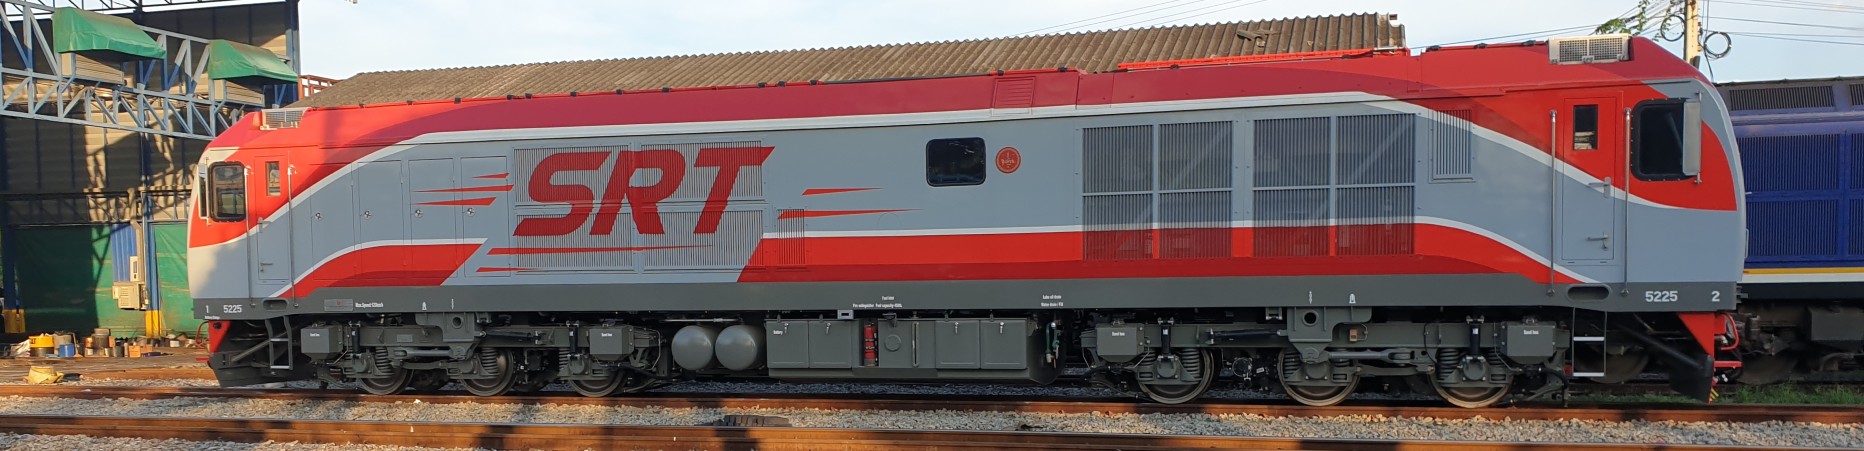 Qishuyan (2022) Locomotive Stock - Engine 5225